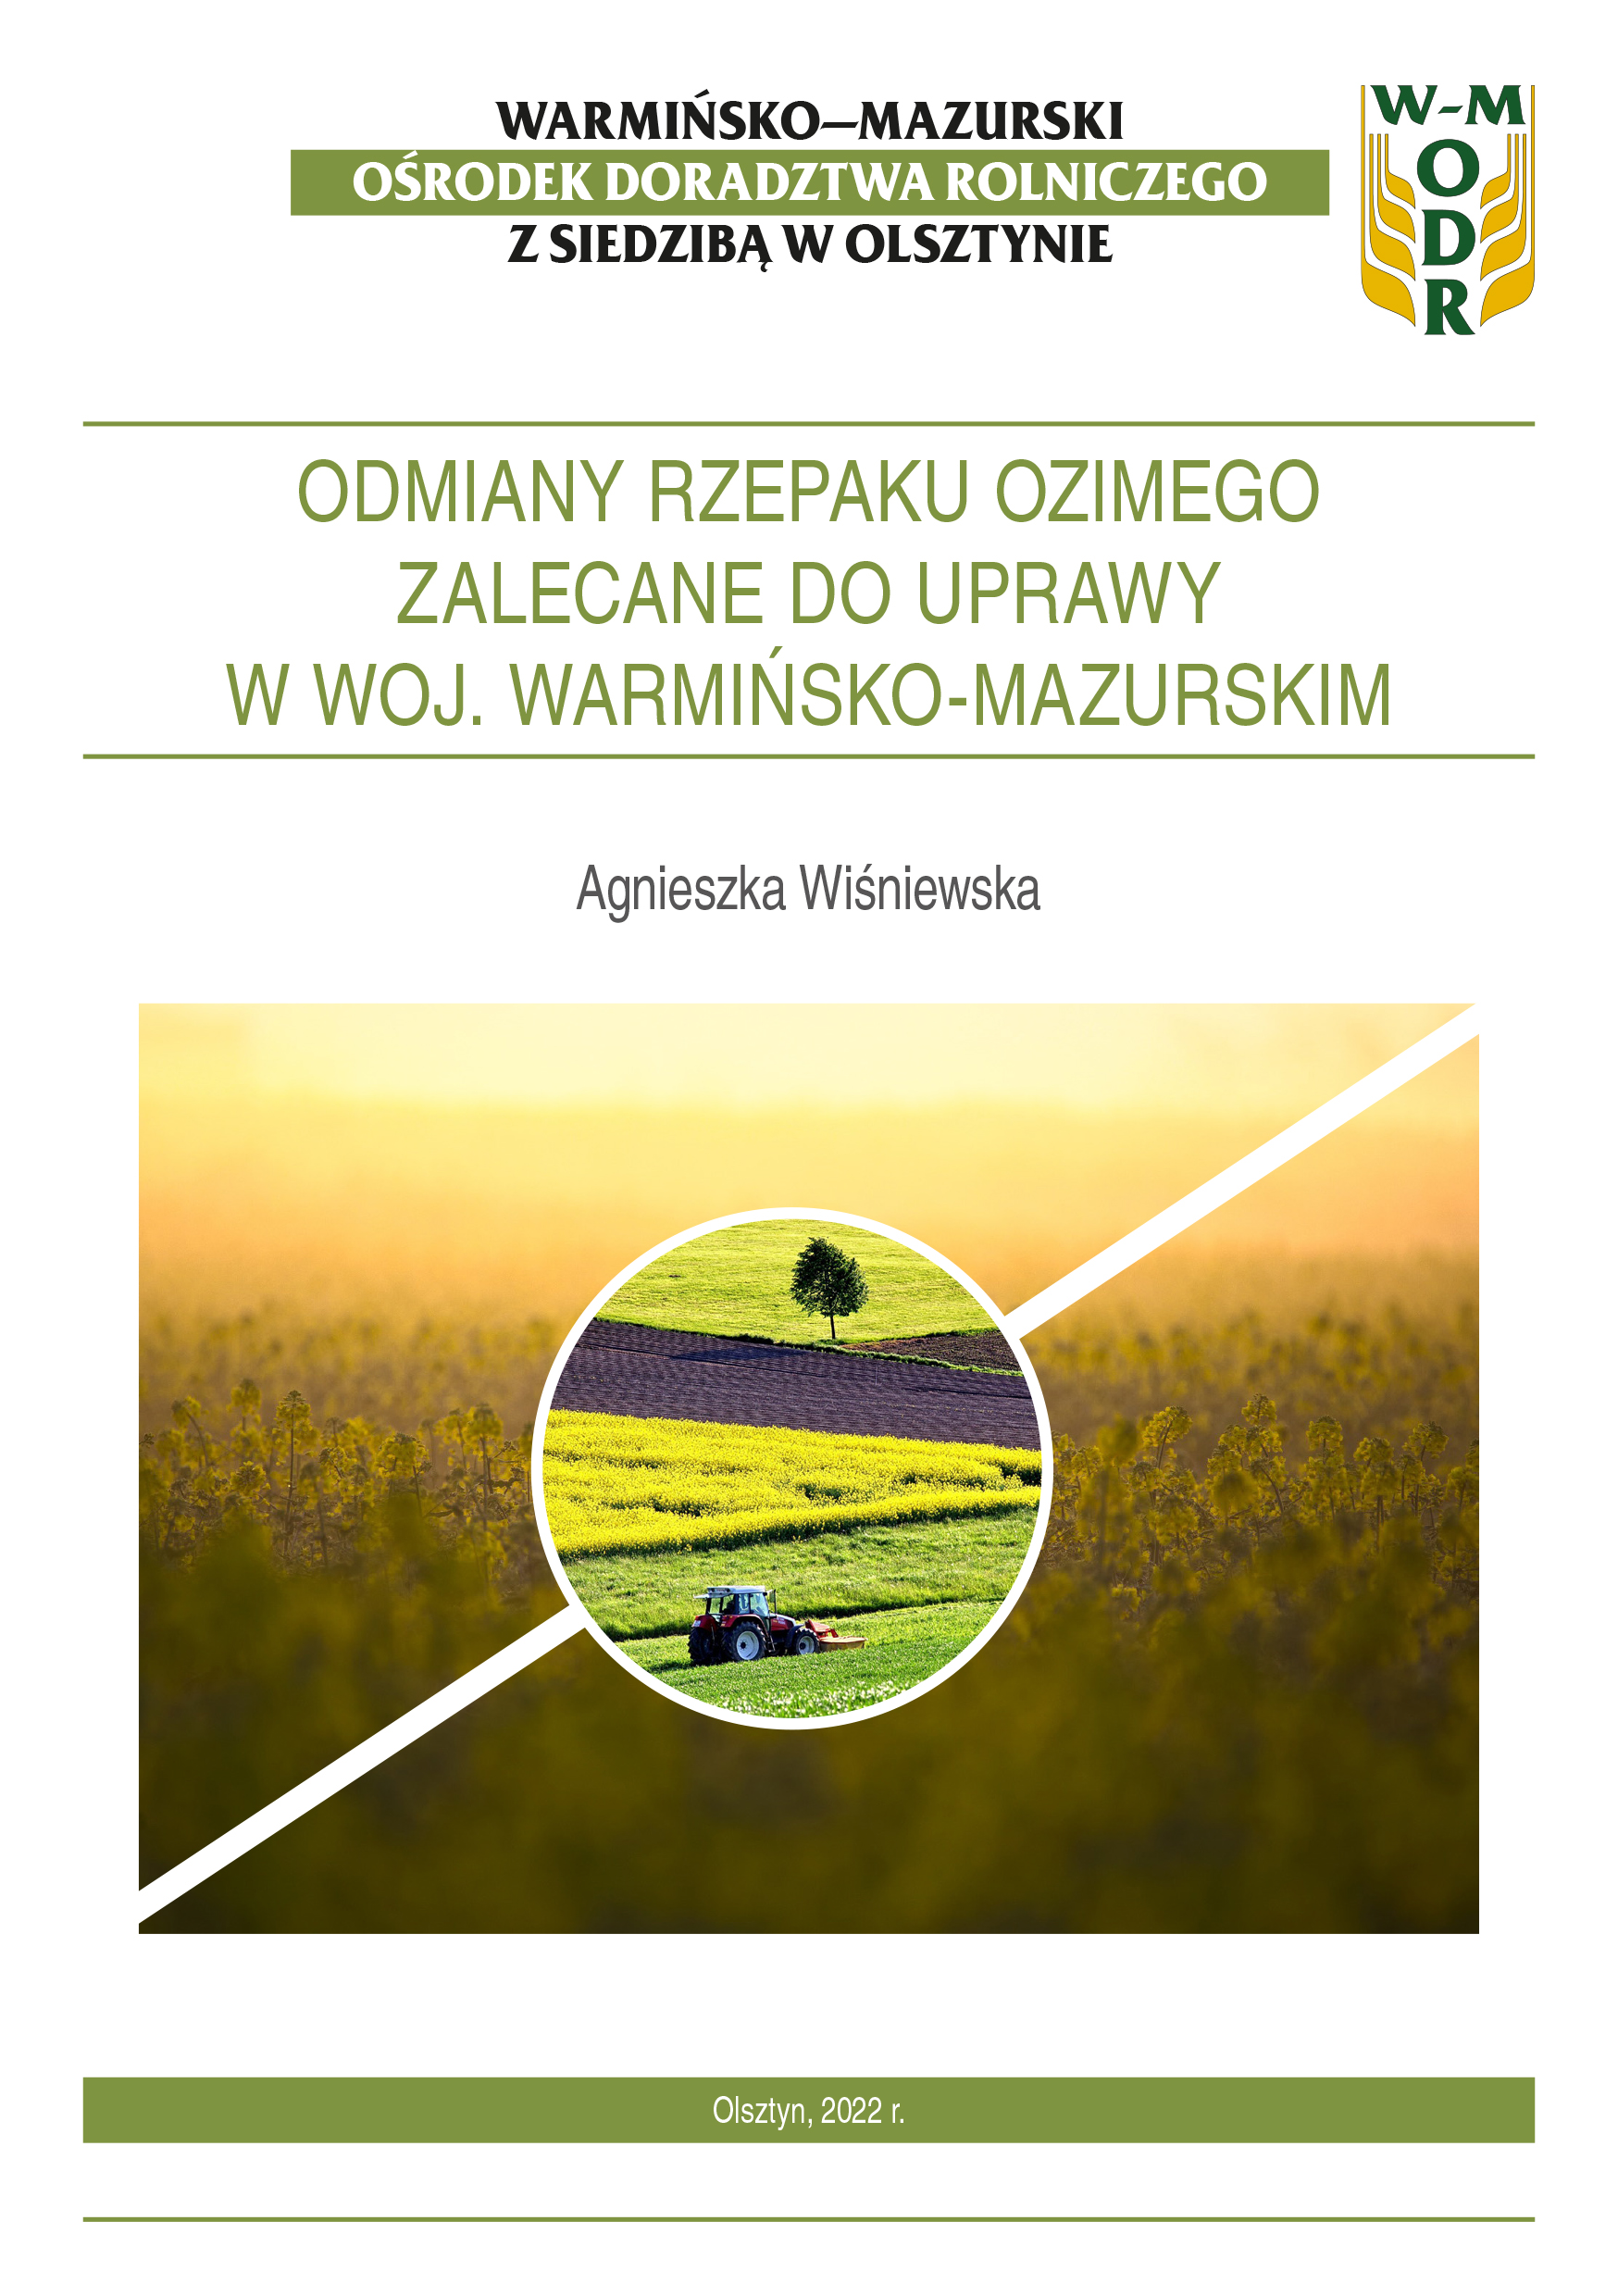 Odmiany rzepaku ozimego zalecane do uprawy w województwie warmińsko-mazurskim